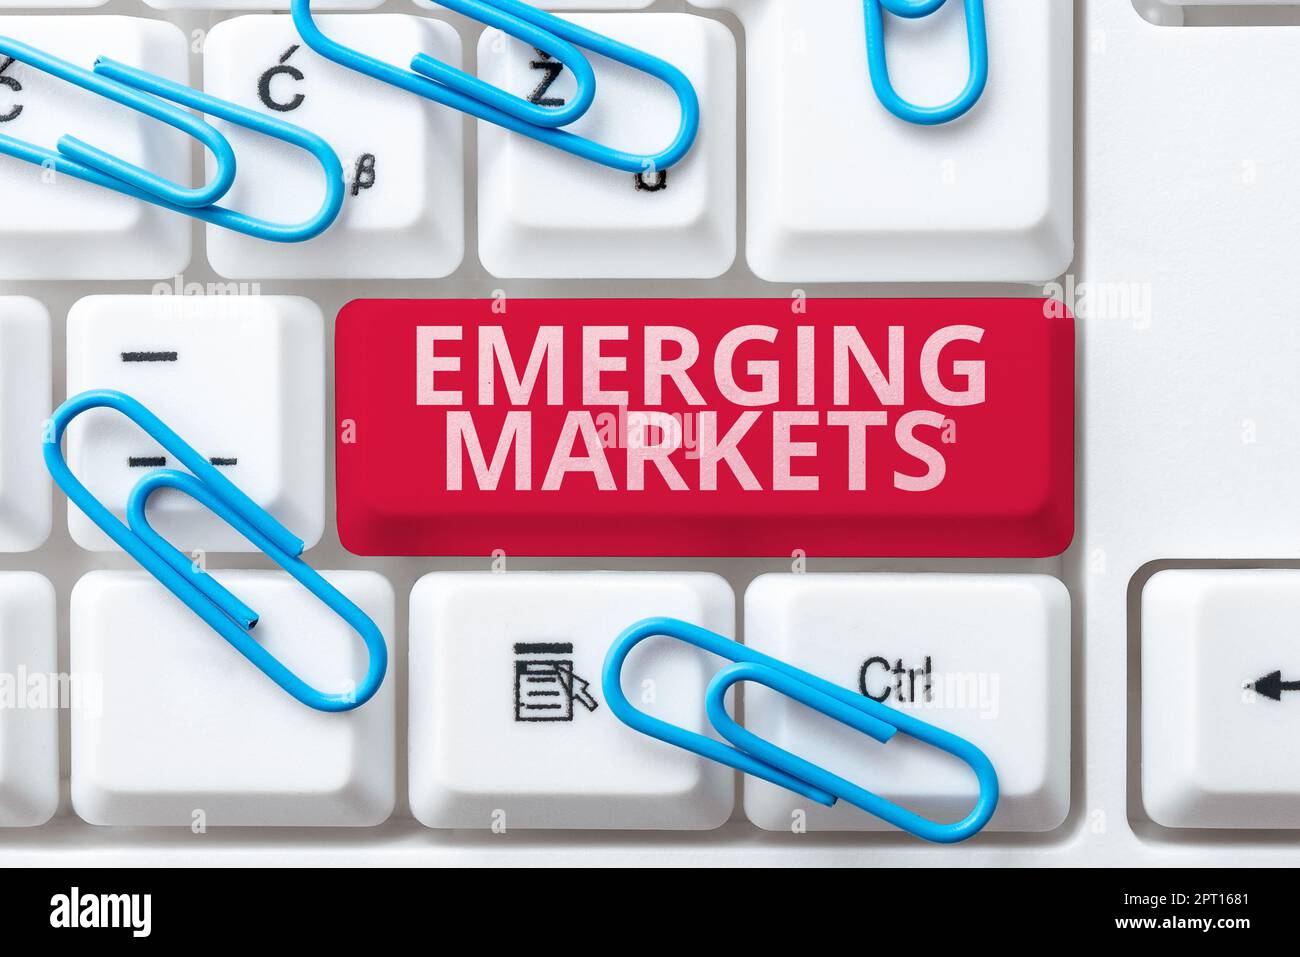 Konzeptdarstellung Emerging Markets, Internet-Konzeptnationen, die in produktivere Kapazitäten investieren Stockfoto